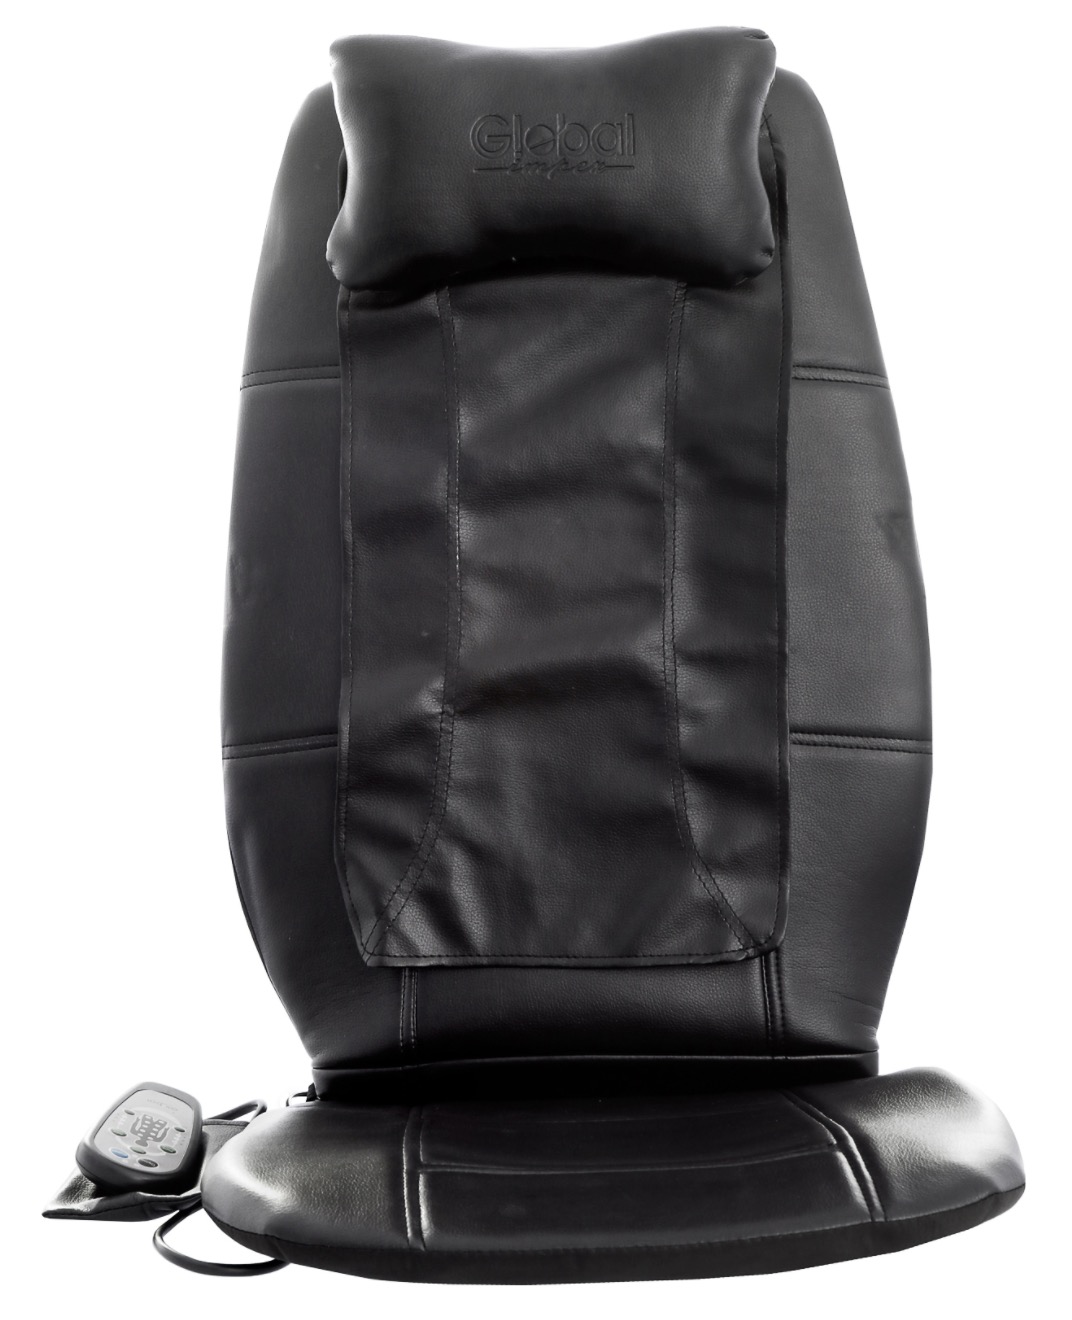 Global Impex Shiatsu Portatil Massage-Sitzauflage für nur 34,99 Euro inkl. Versand